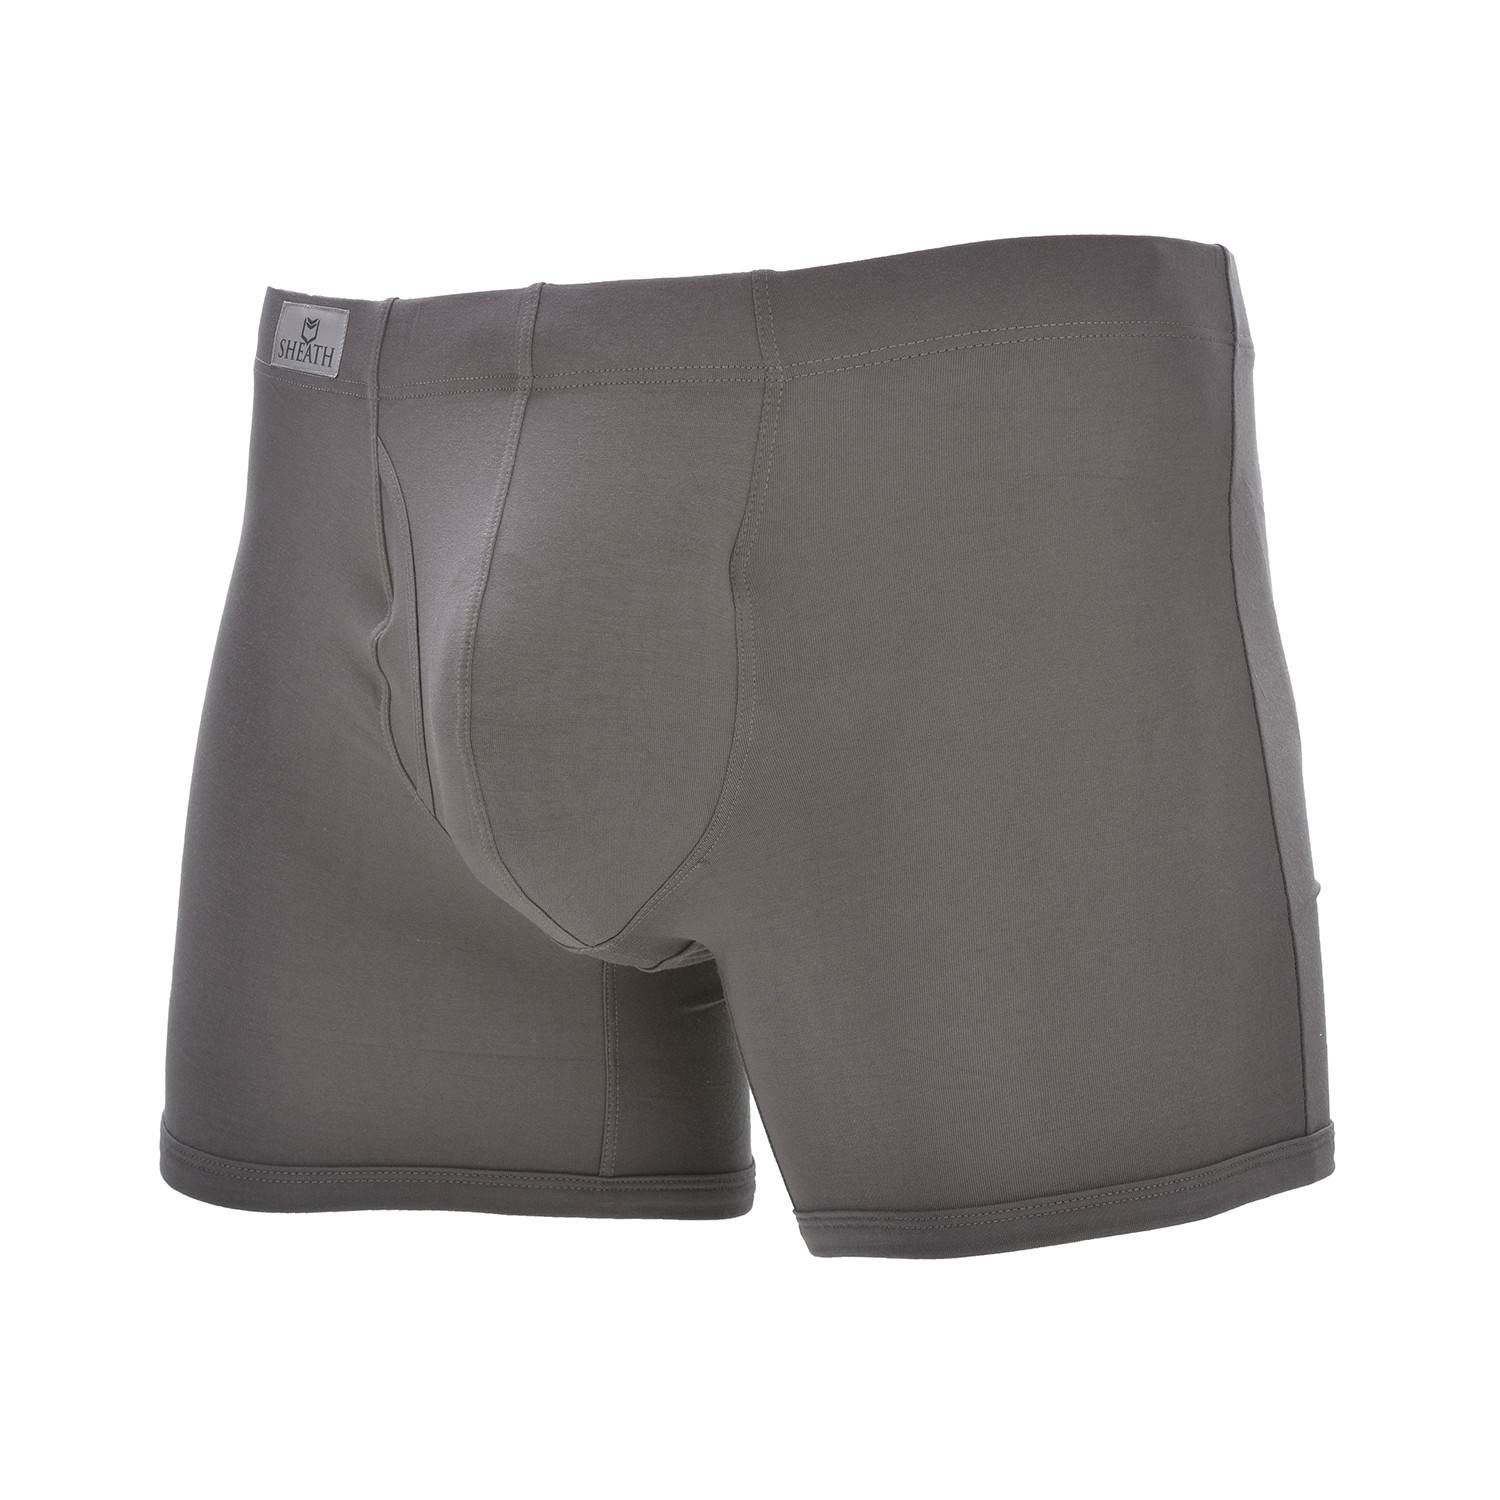 Sheath 3.21 Dual Pouch Fly Underwear // Gray (Medium) - Sheath ...